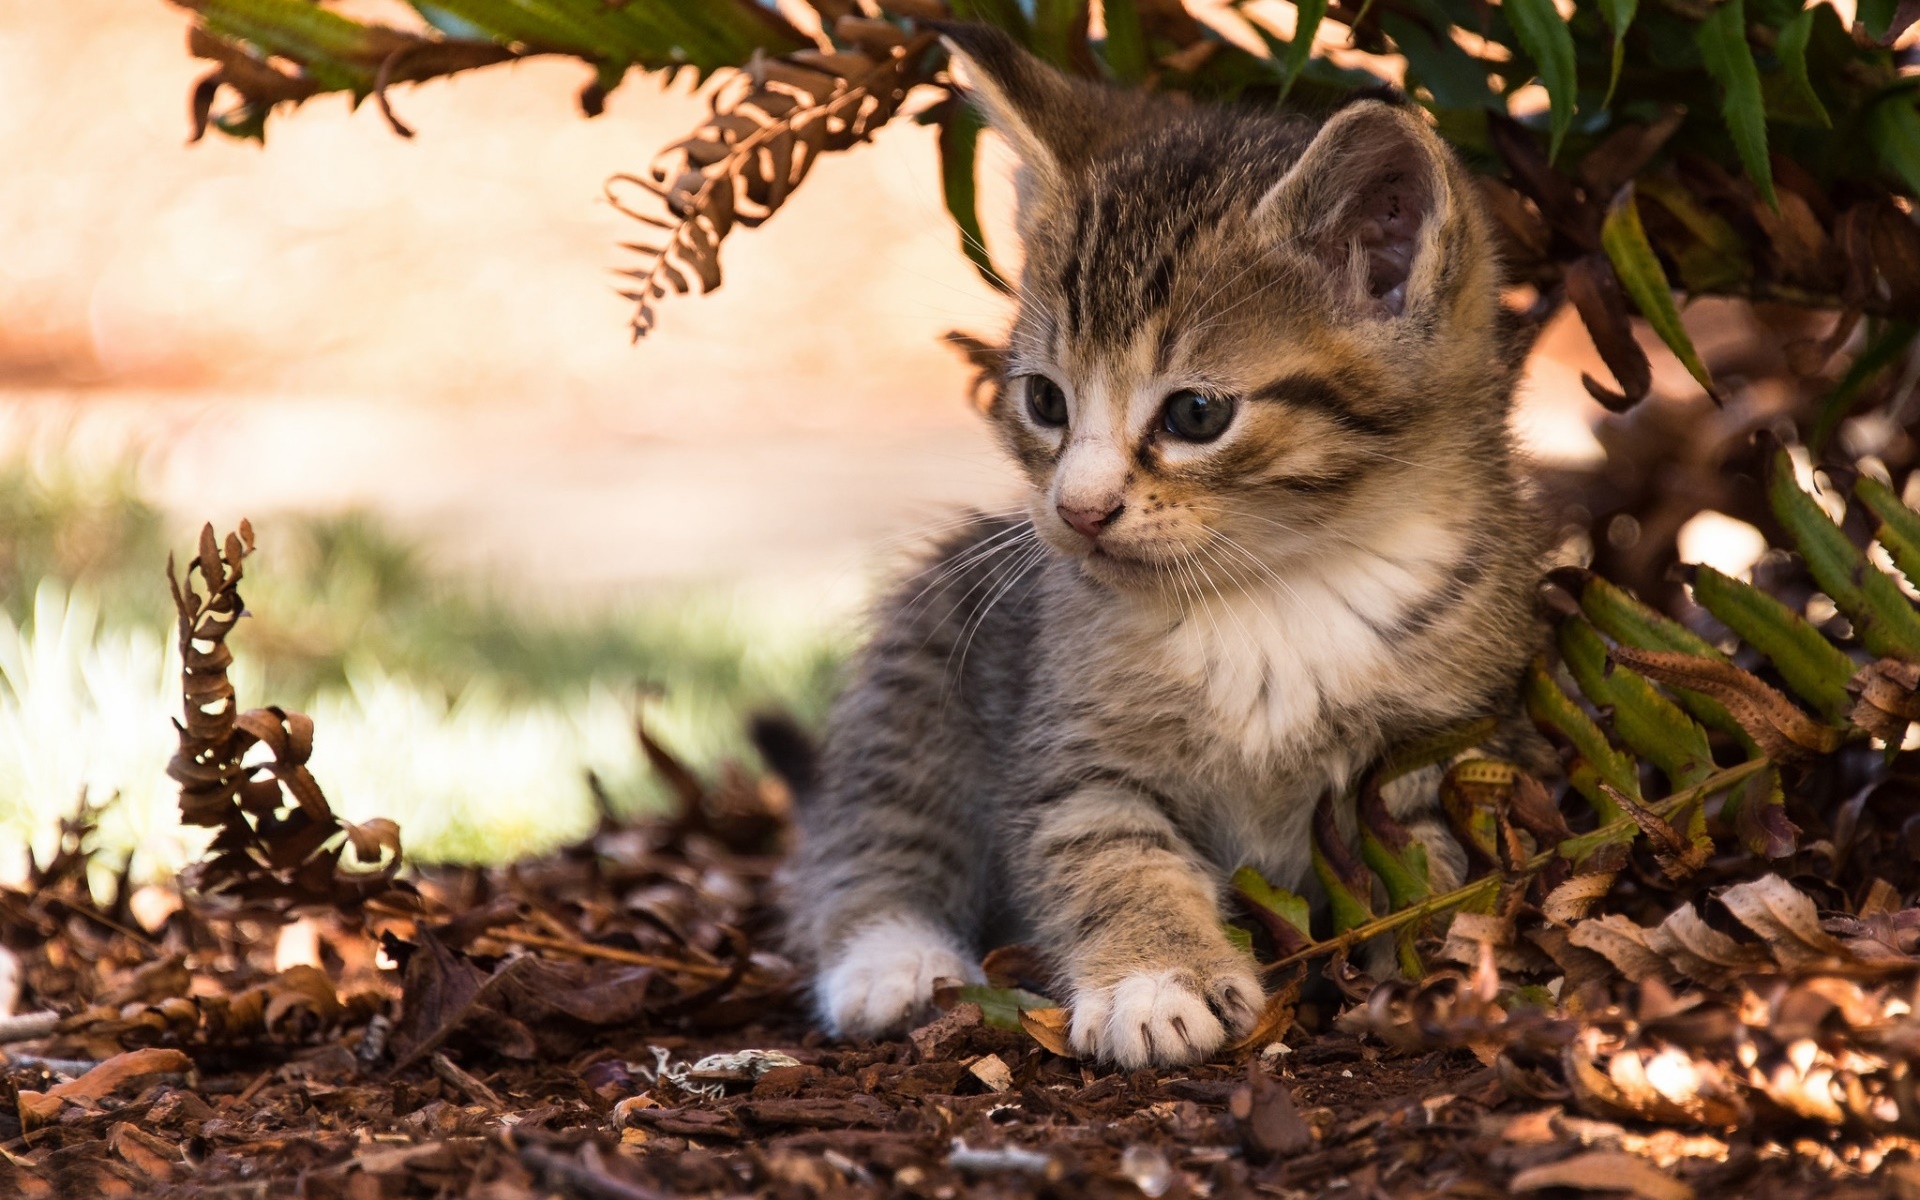 Caturday pic of a cute kitten